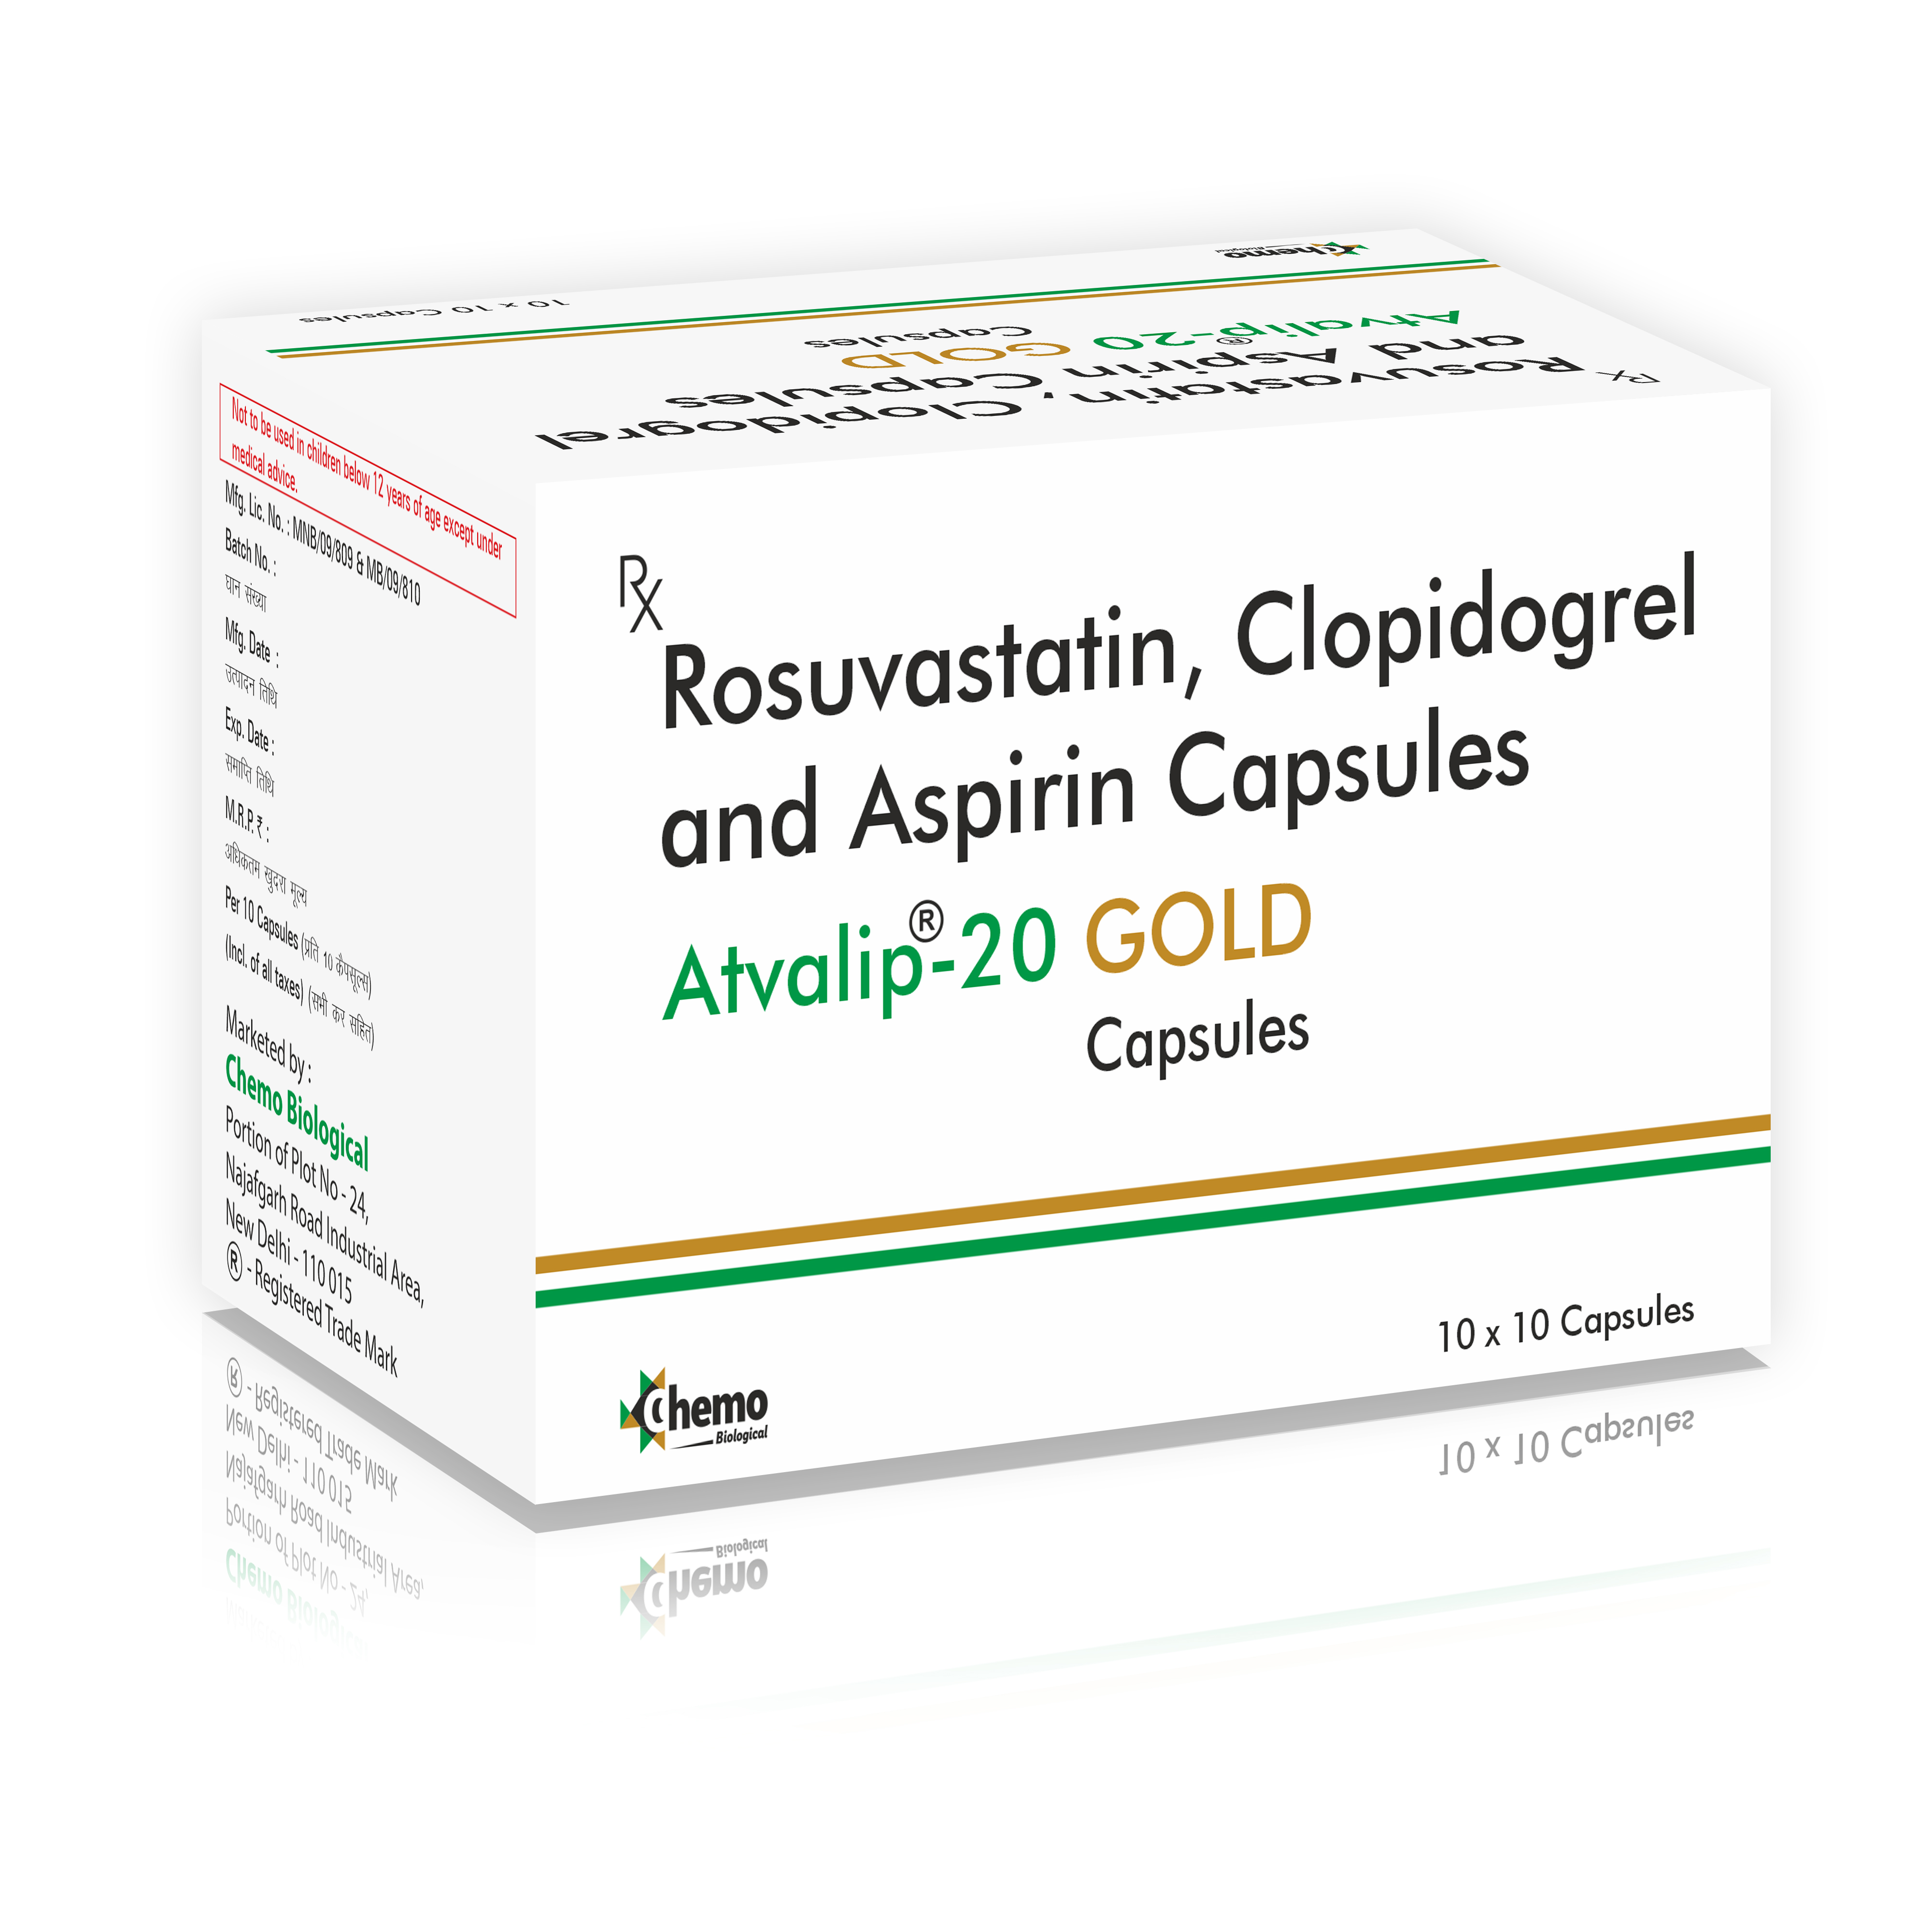 rosuvastatin 20mg (film coated) + clopidogrel 75mg (pallets) +
aspirin 75mg (gastro resistant pallets)